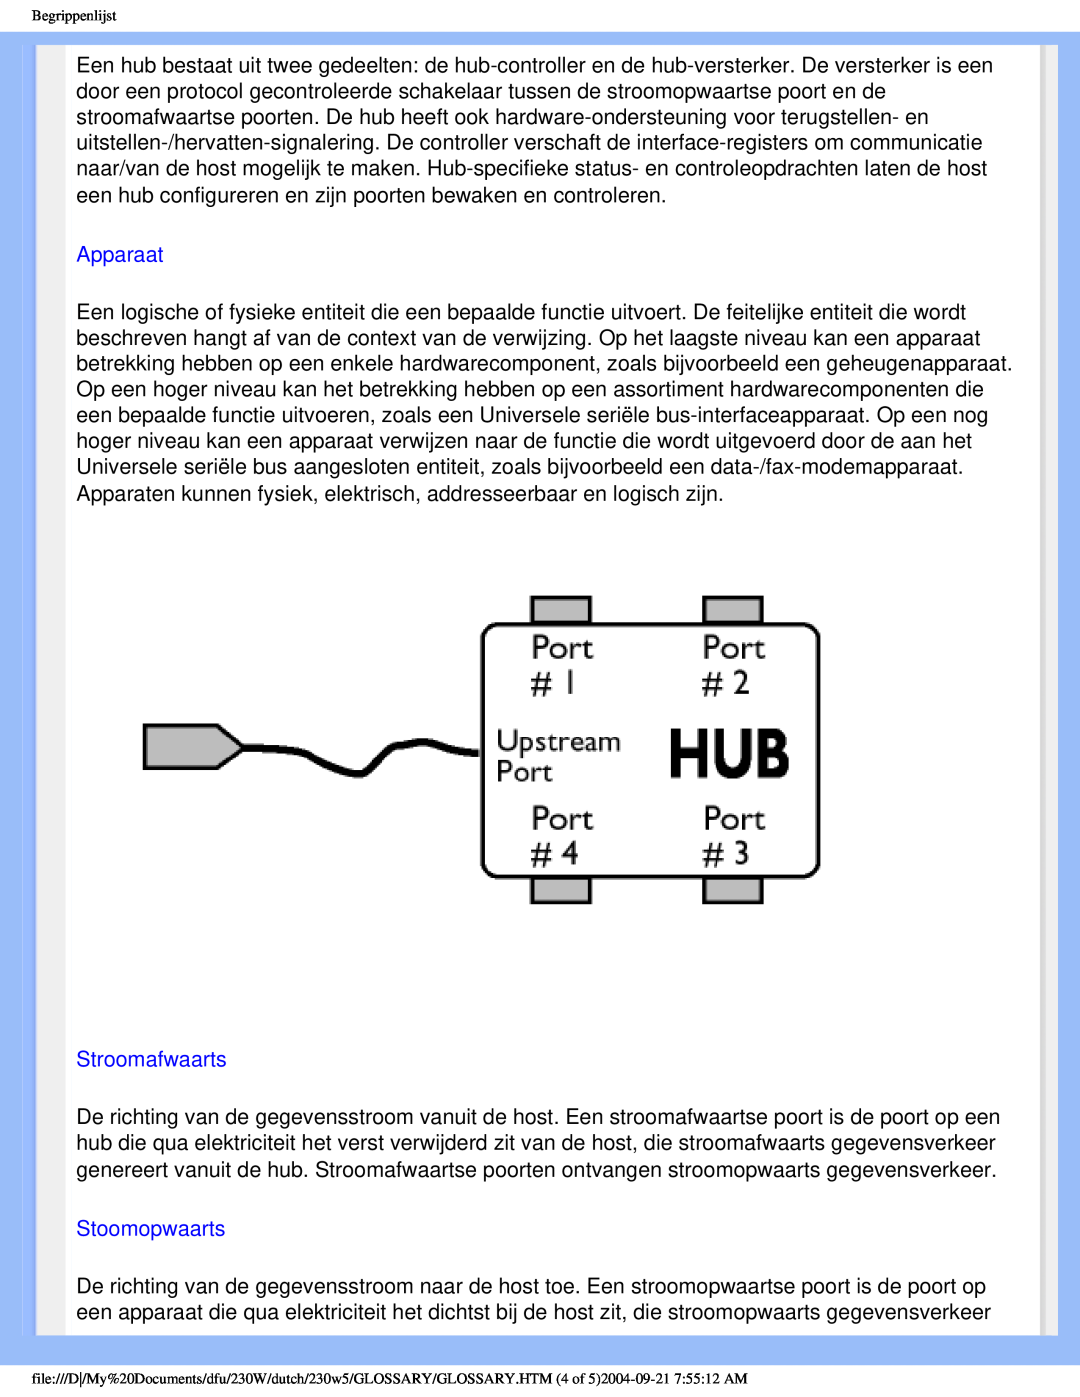 Philips 230W user manual Apparaat, Stroomafwaarts, Stoomopwaarts 